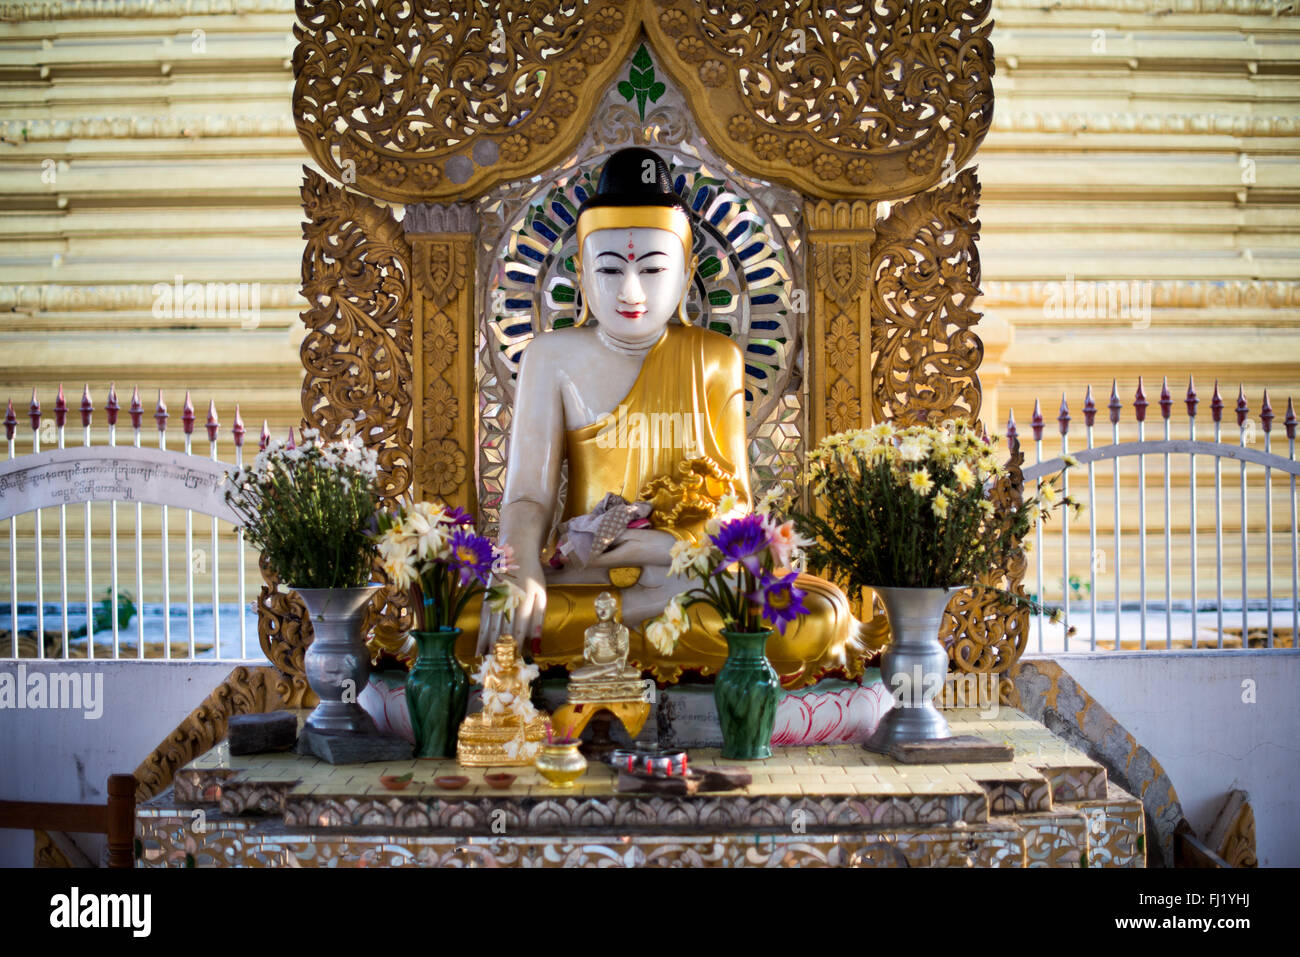 MANDALAY, Myanmar - von König Mindon 1857 am Fuße des Mandalay Hill gebaut, die Kuthodaw Pagode Häuser, was als größte Buch der Welt, die aus 729 kyauksa gu oder Stein - Inschrift Höhlen, die jeweils eine Marmorplatte auf beiden Seiten mit einer Seite des Textes von der Tipitaka, die gesamte Pali-kanon des Theravada-buddhismus eingeschrieben bekannt ist. Stockfoto